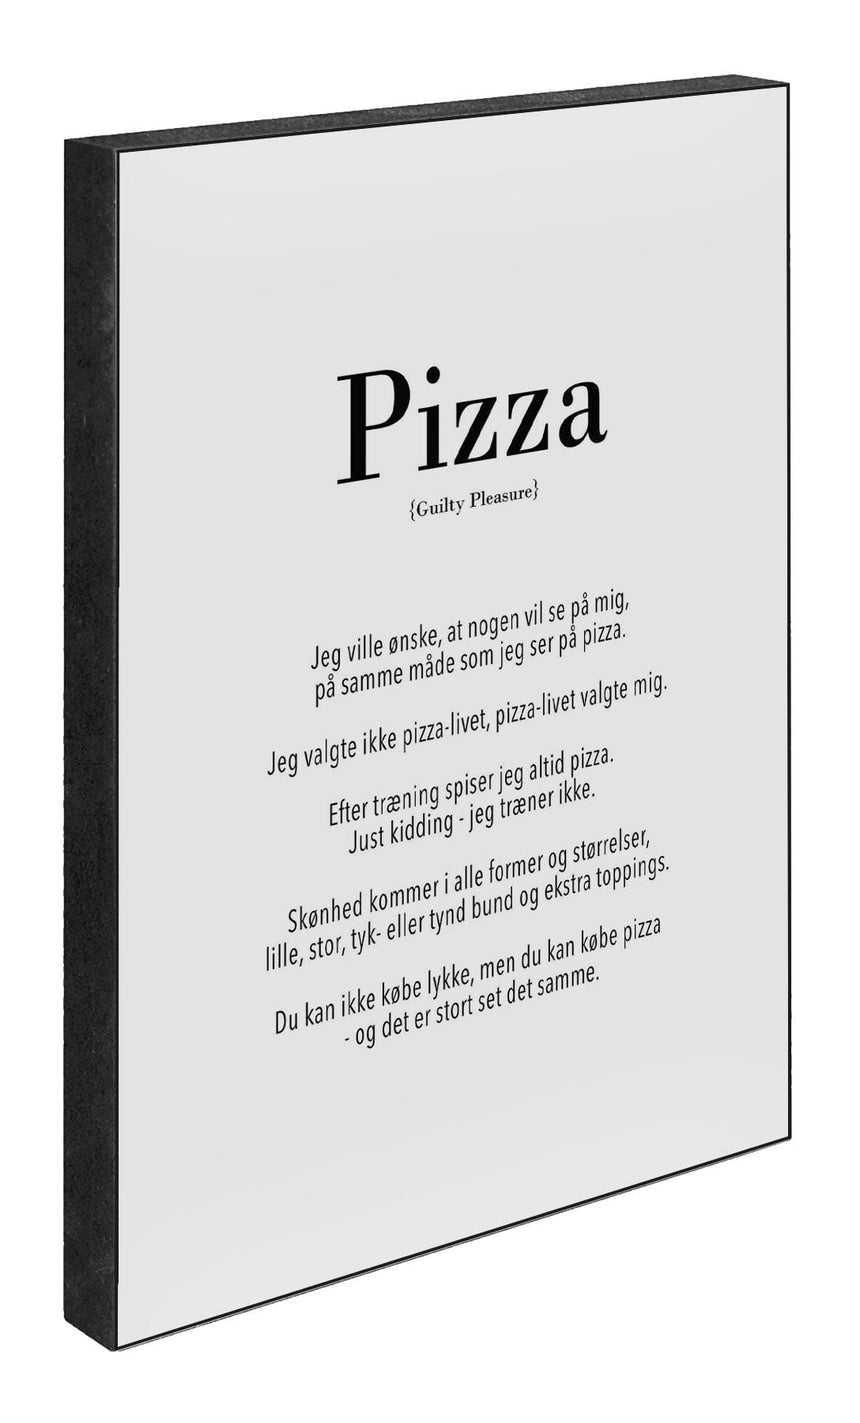 Art Block - Pizza - Incado